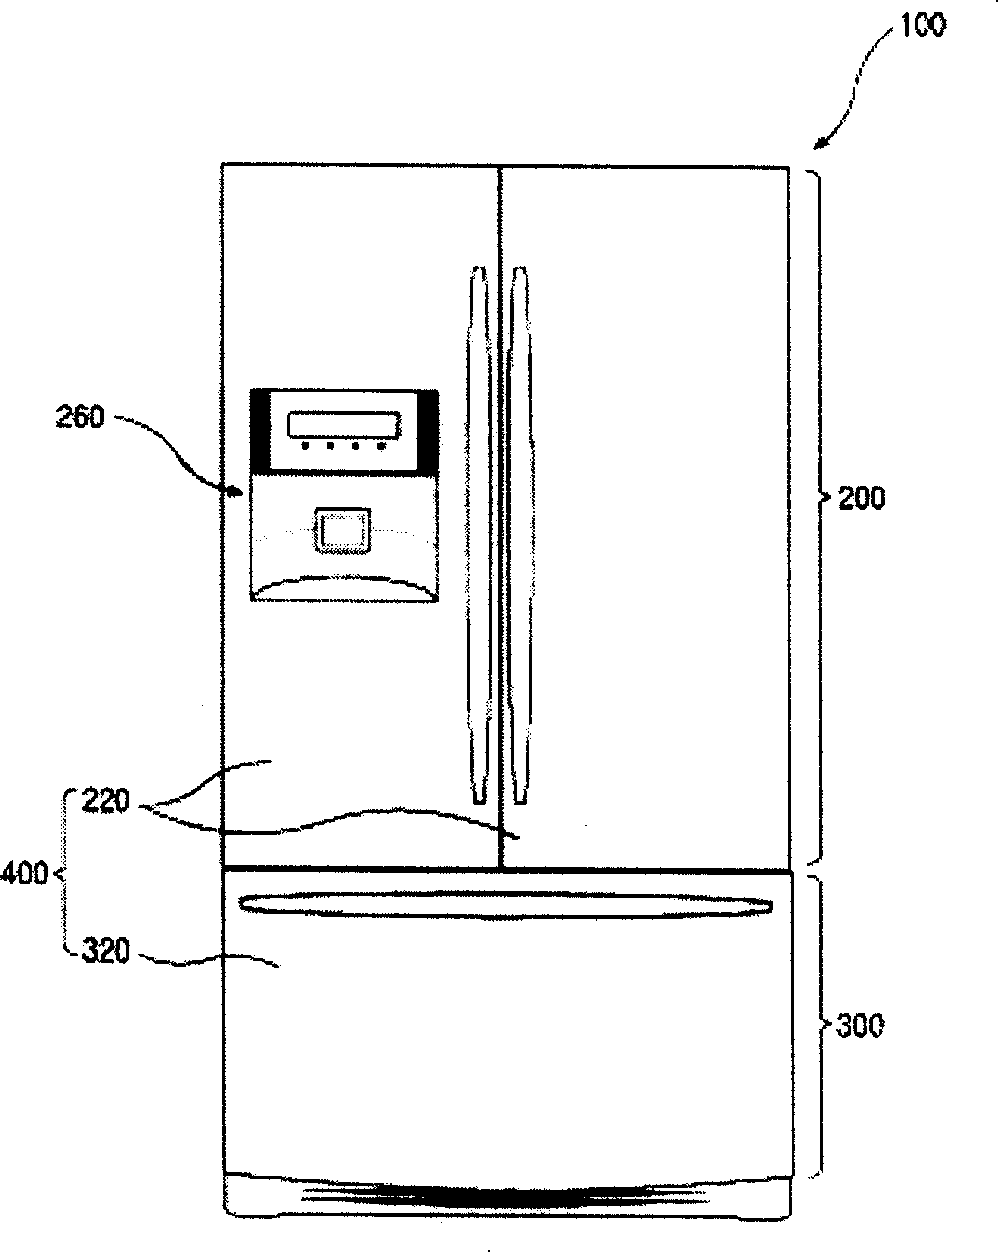 Pipe guiding arrangement structure of refrigerator door